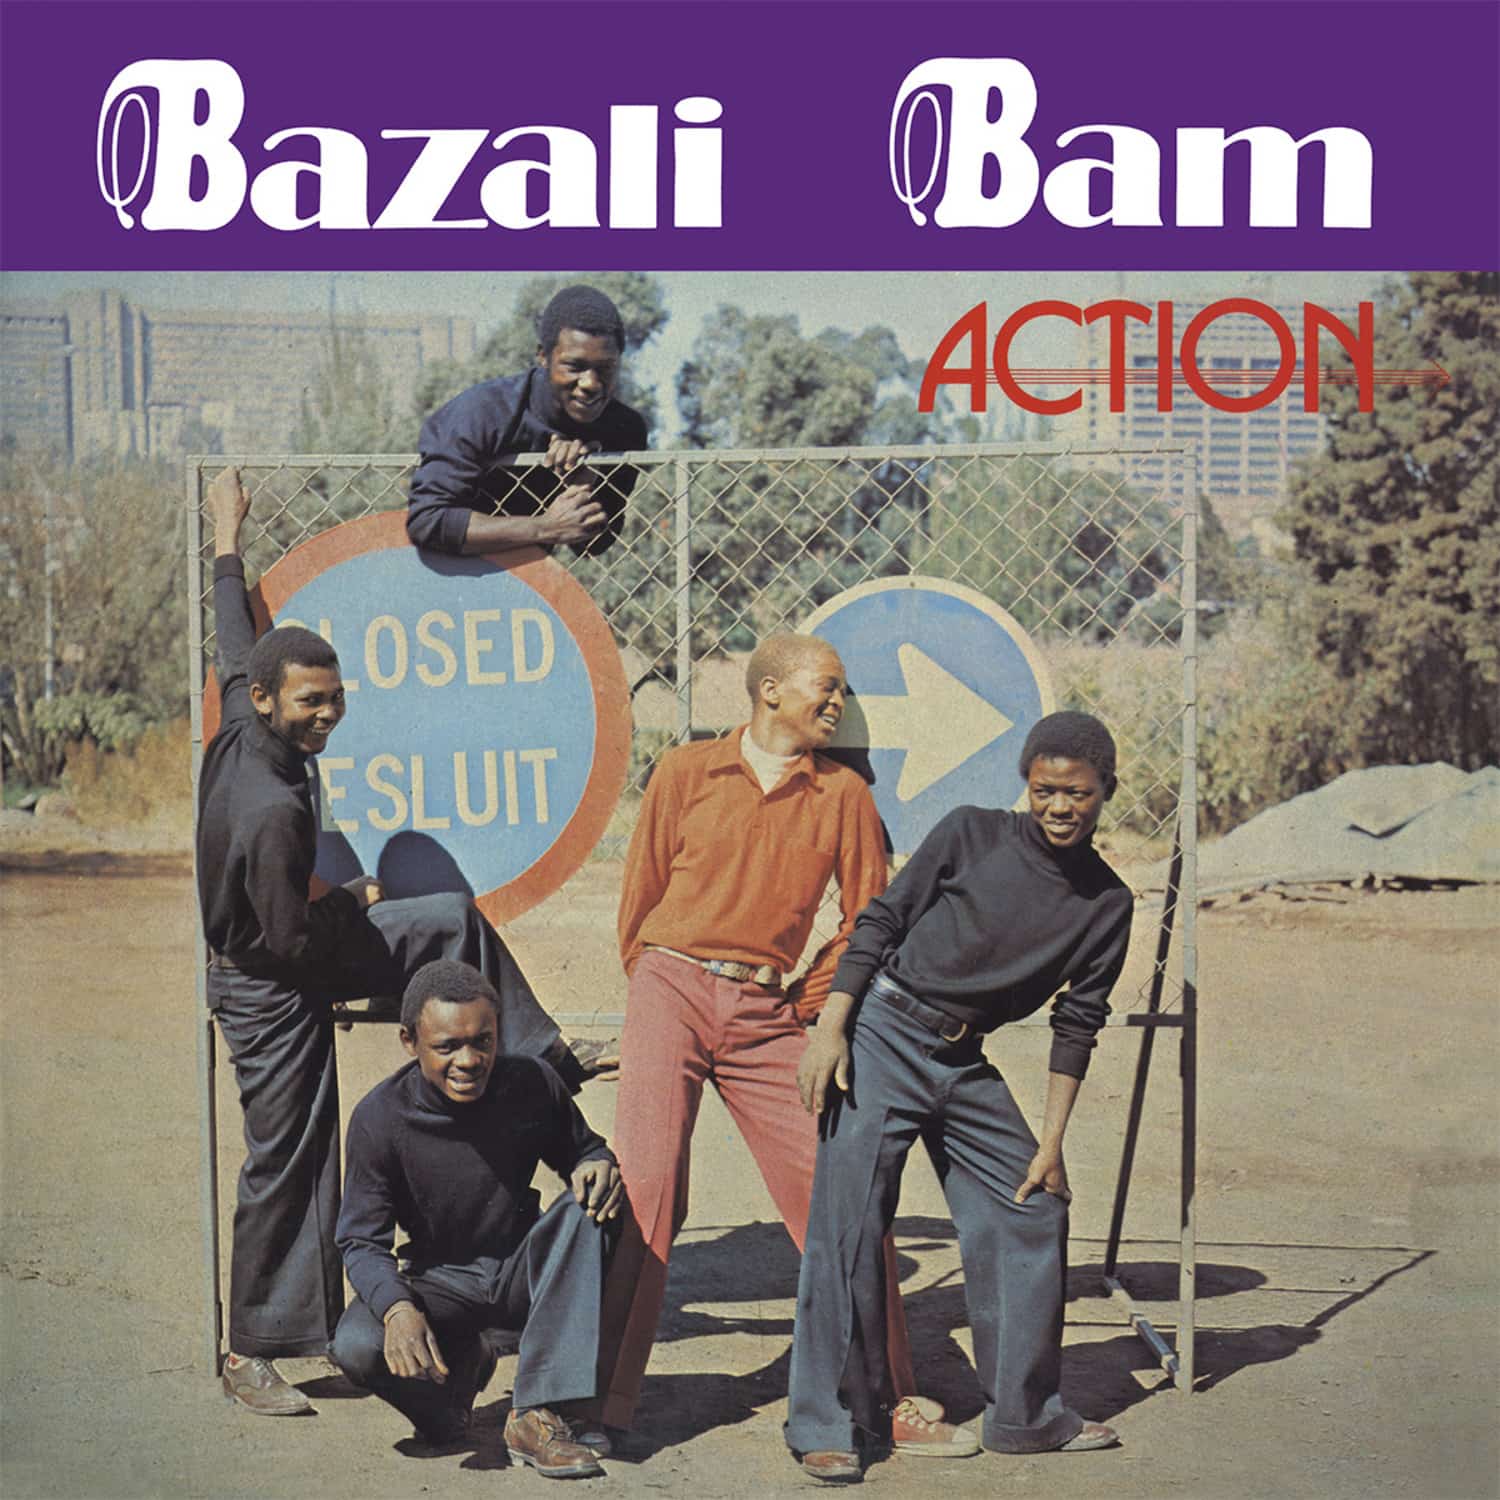 Bazali Bam - ACTION 